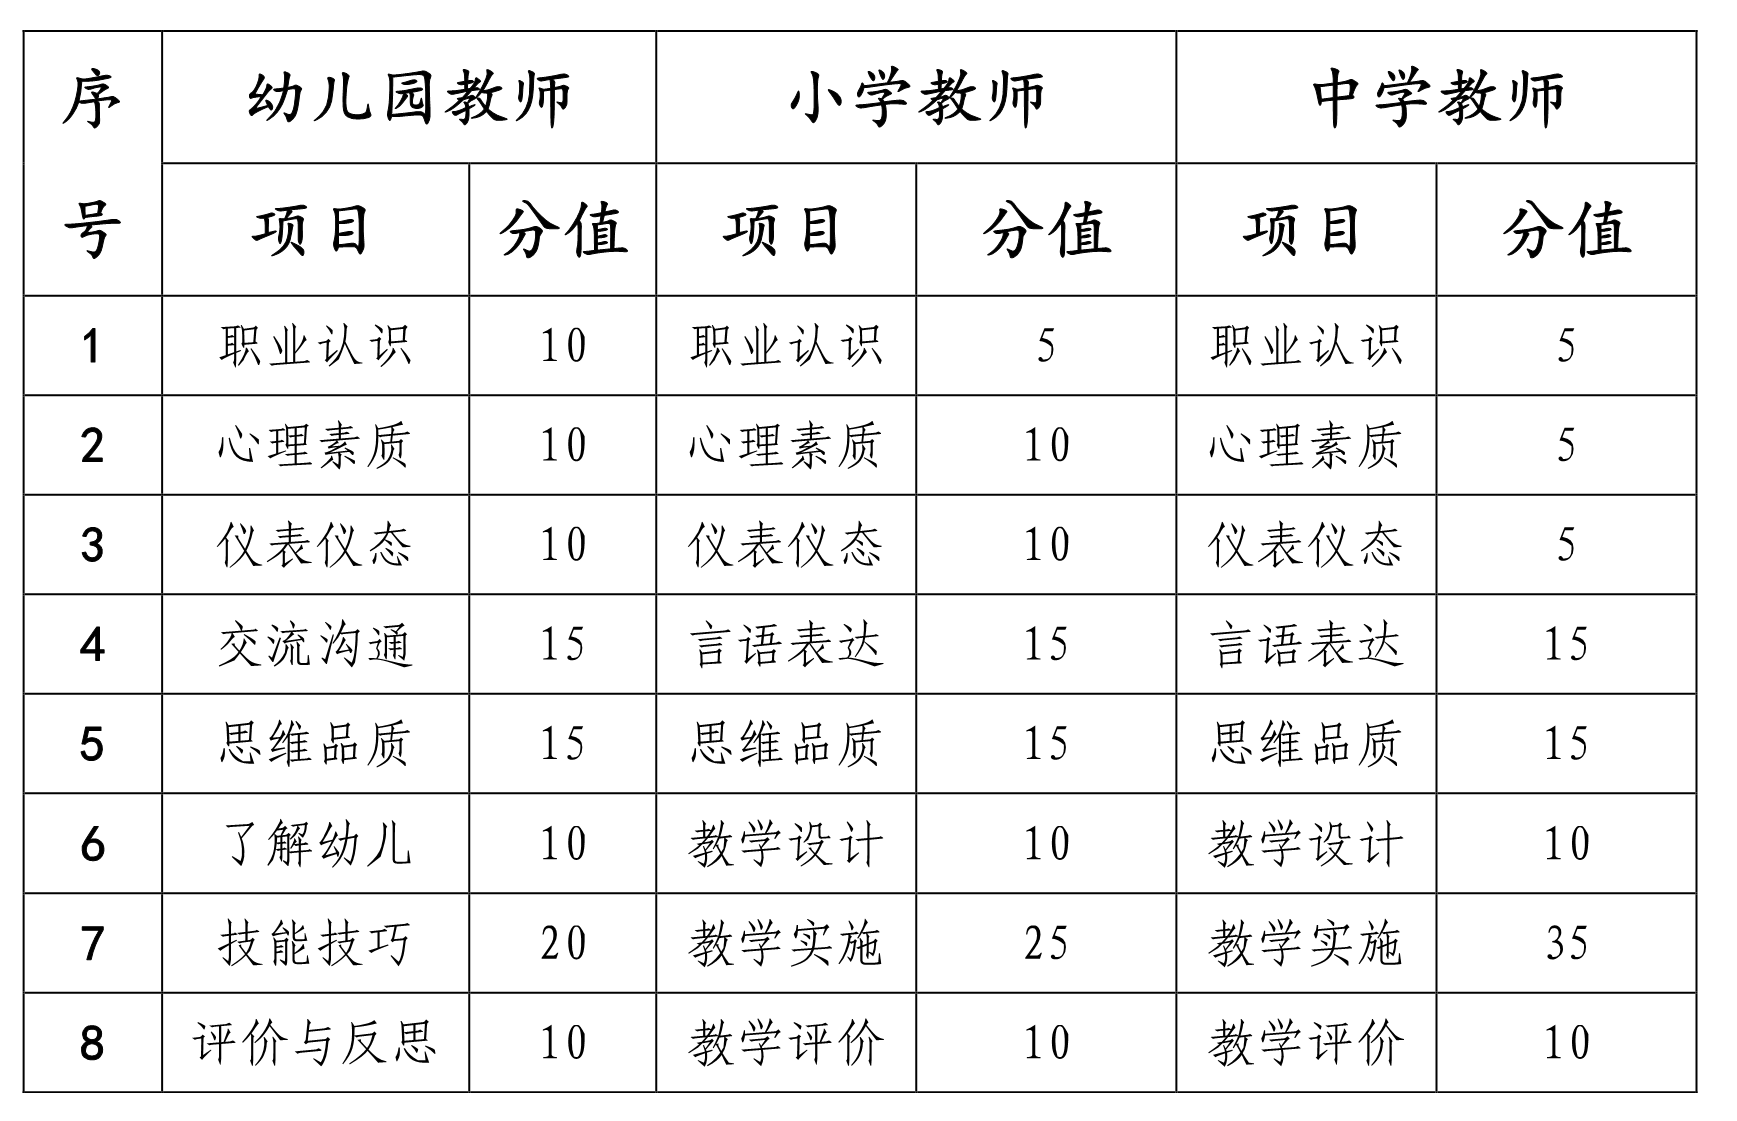 海南省2020年下半年教师资格考试面试公告